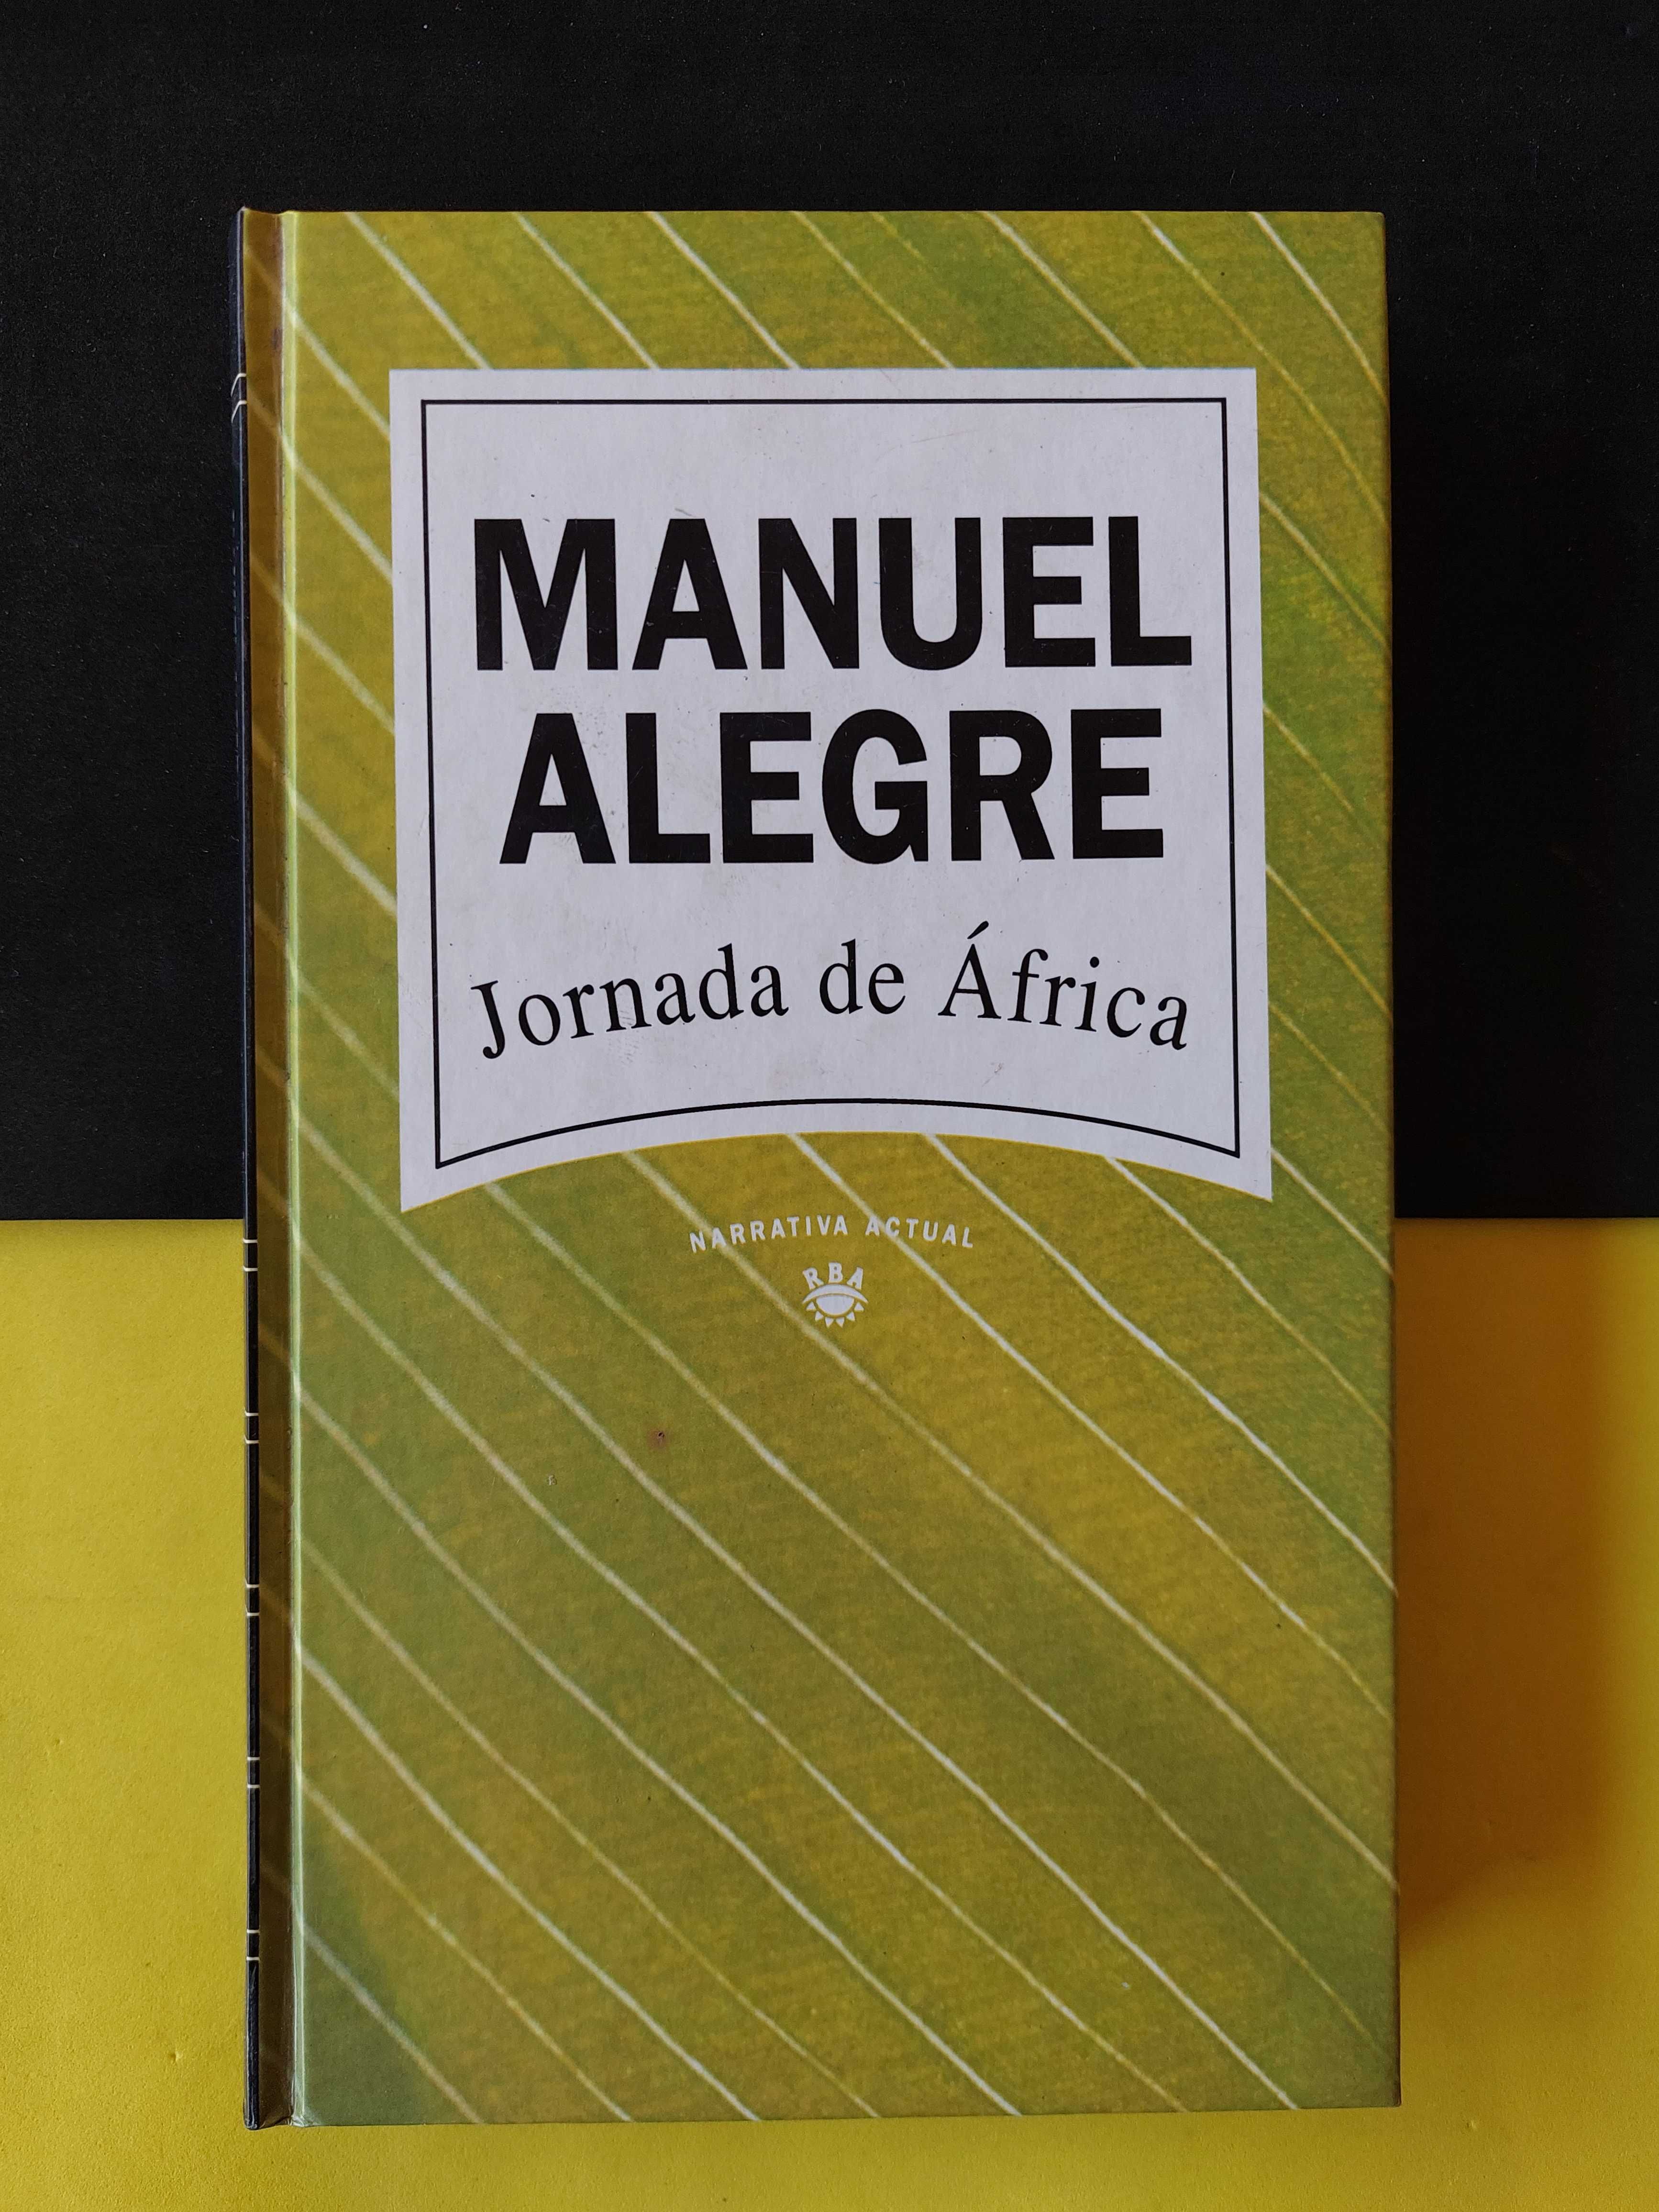 Manuel Alegre - Jornada de África